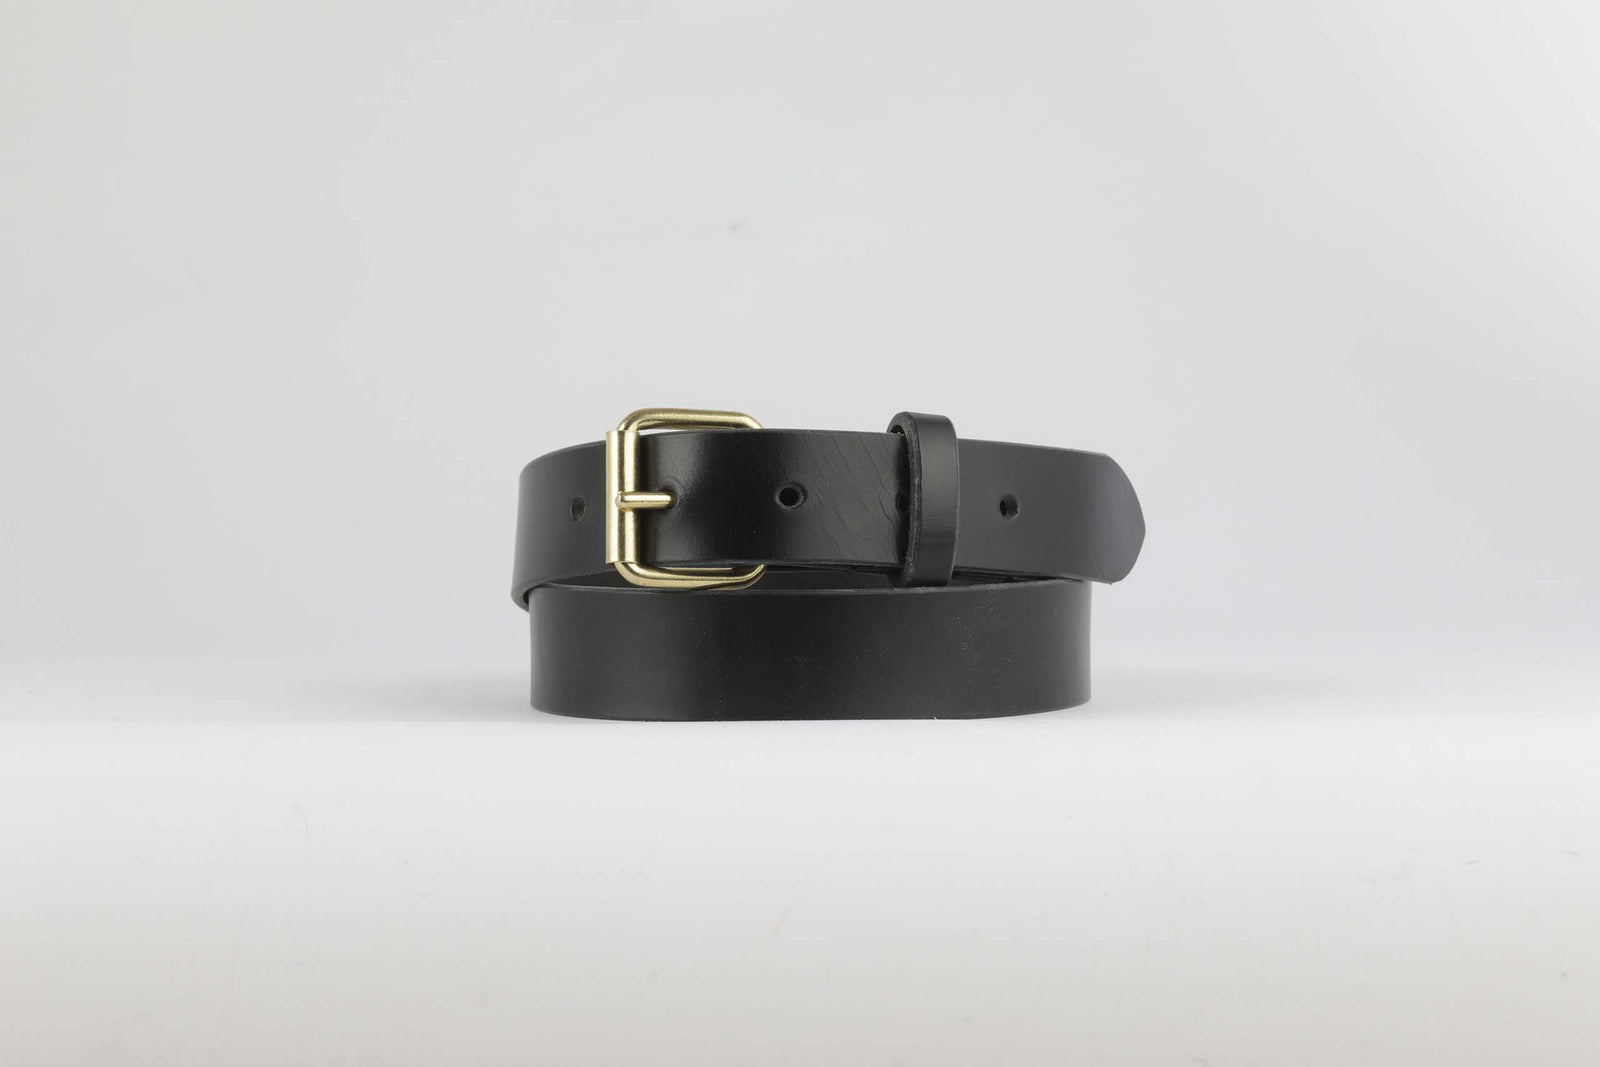 Heavy Duty Belt in black leather